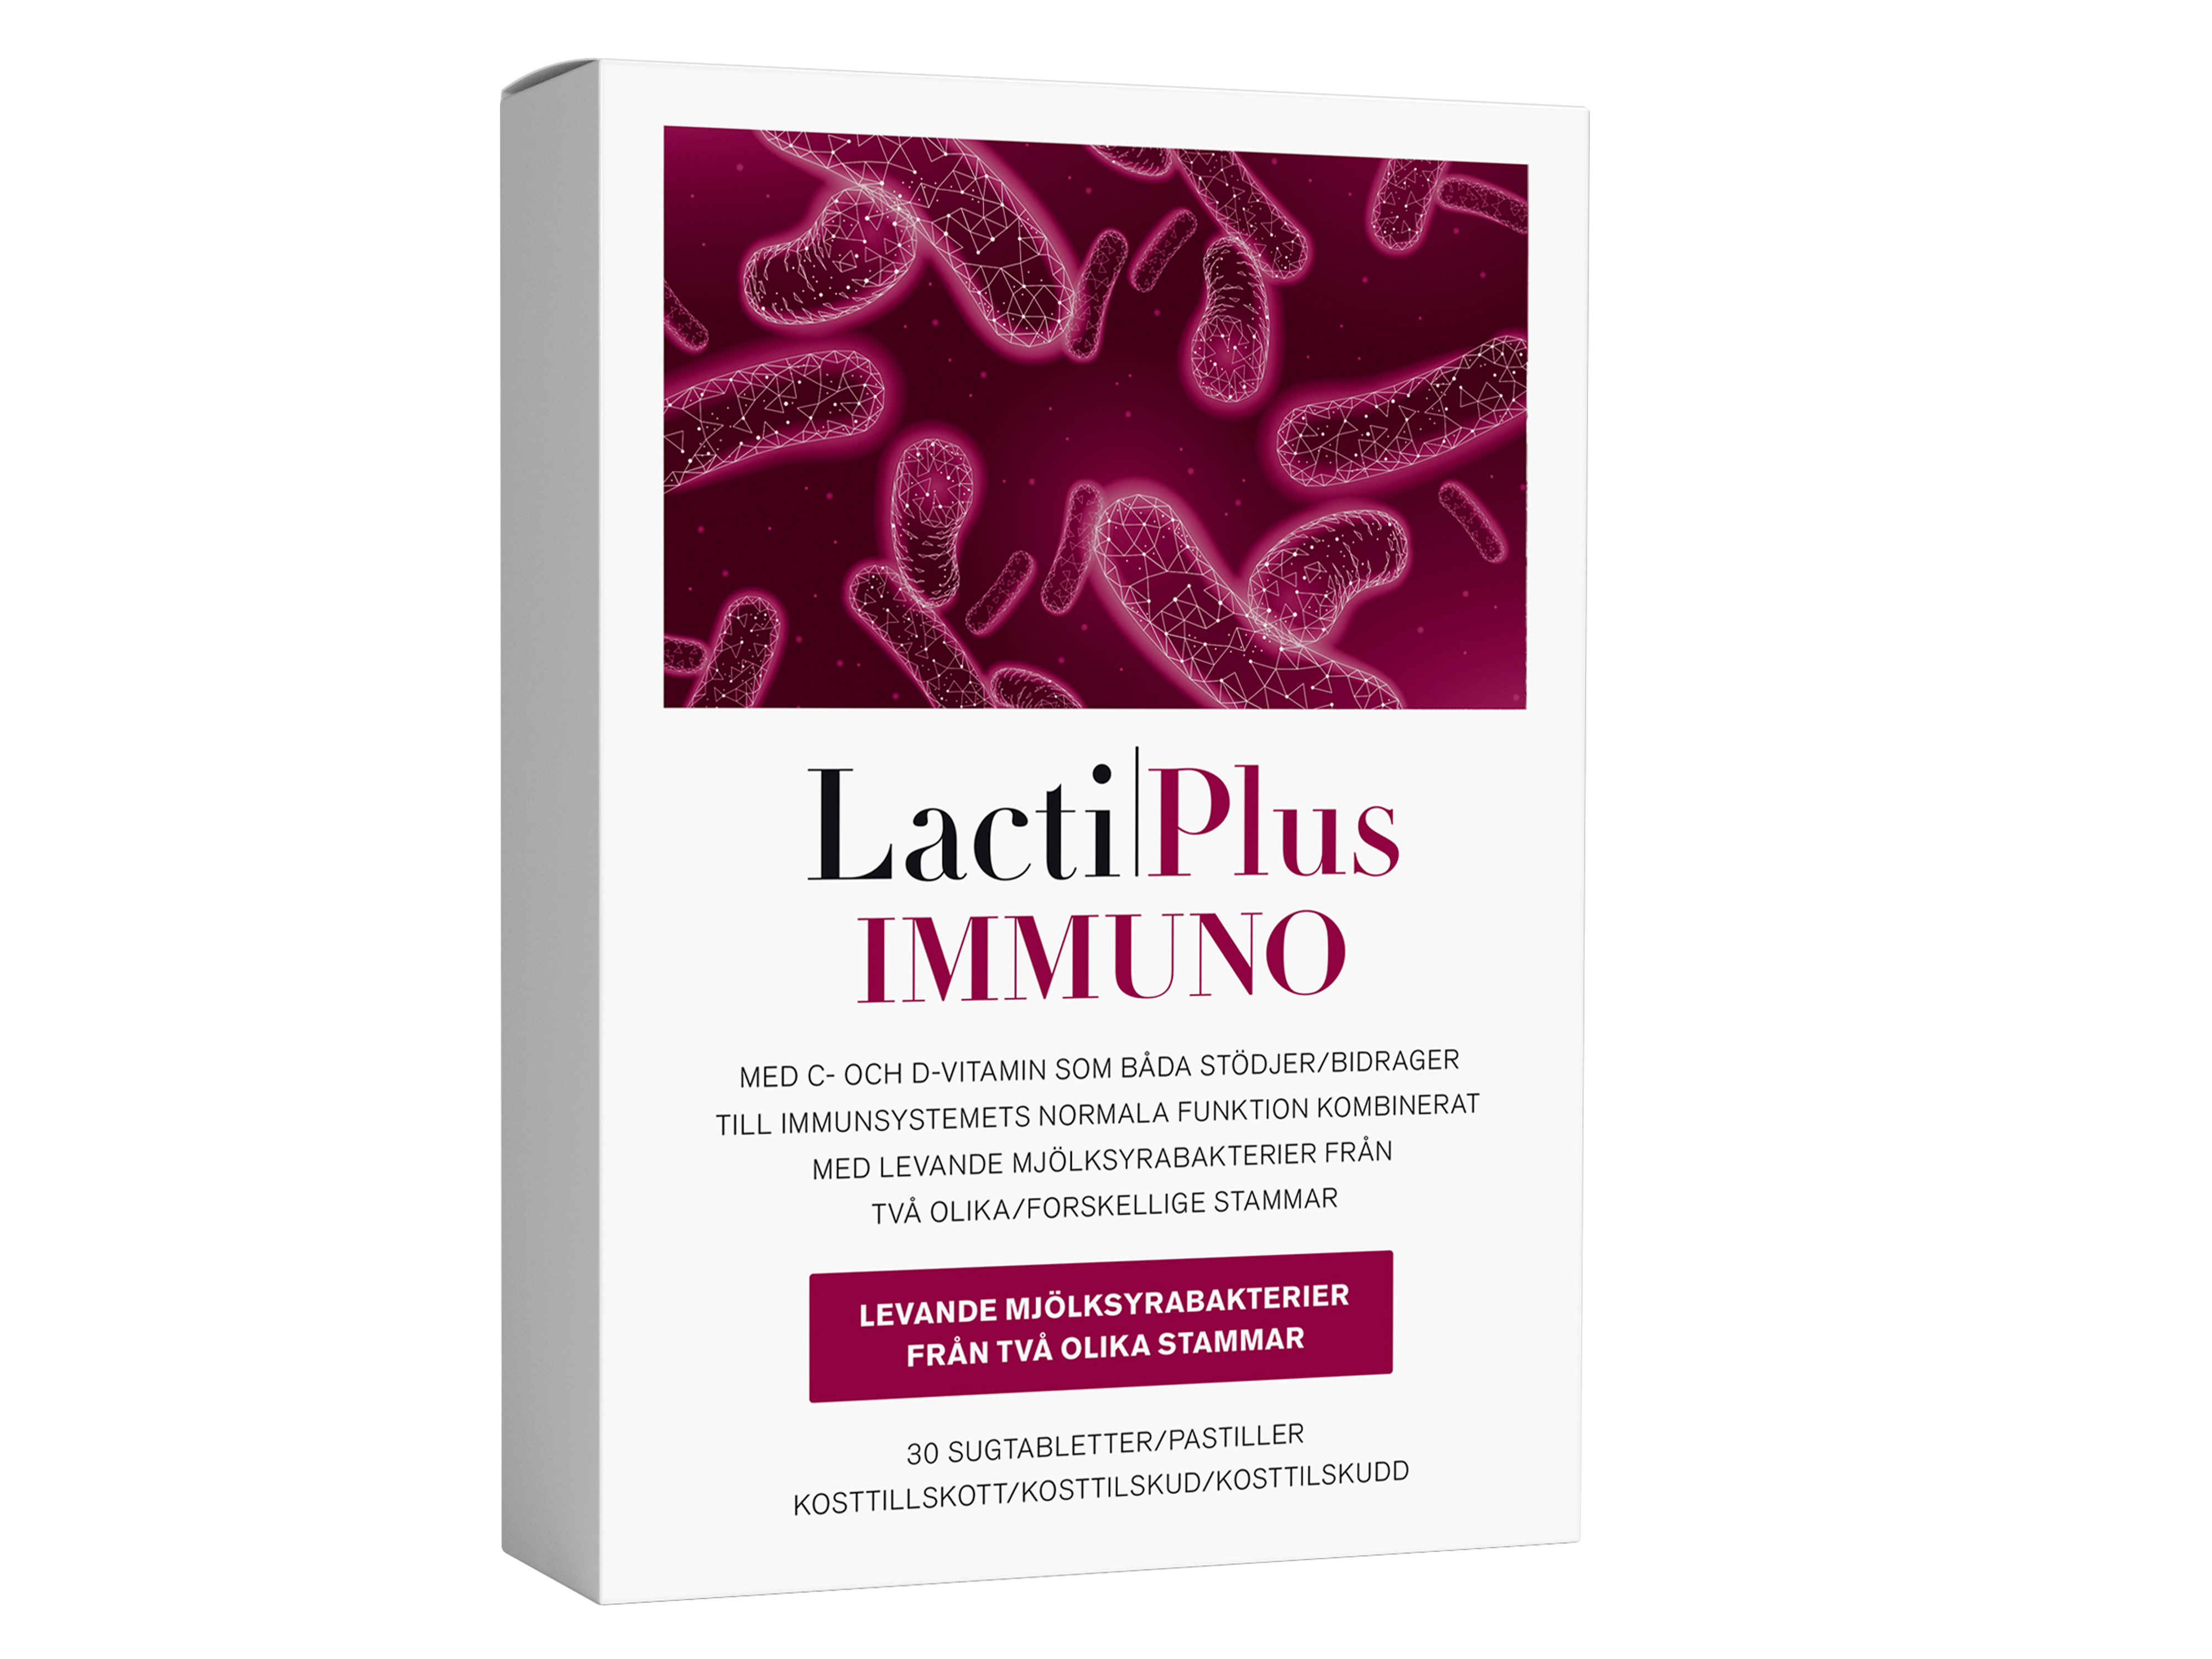 LactiPlus Immuno – melkesyrebakterier for immunforsvaret, 30 sugetabletter